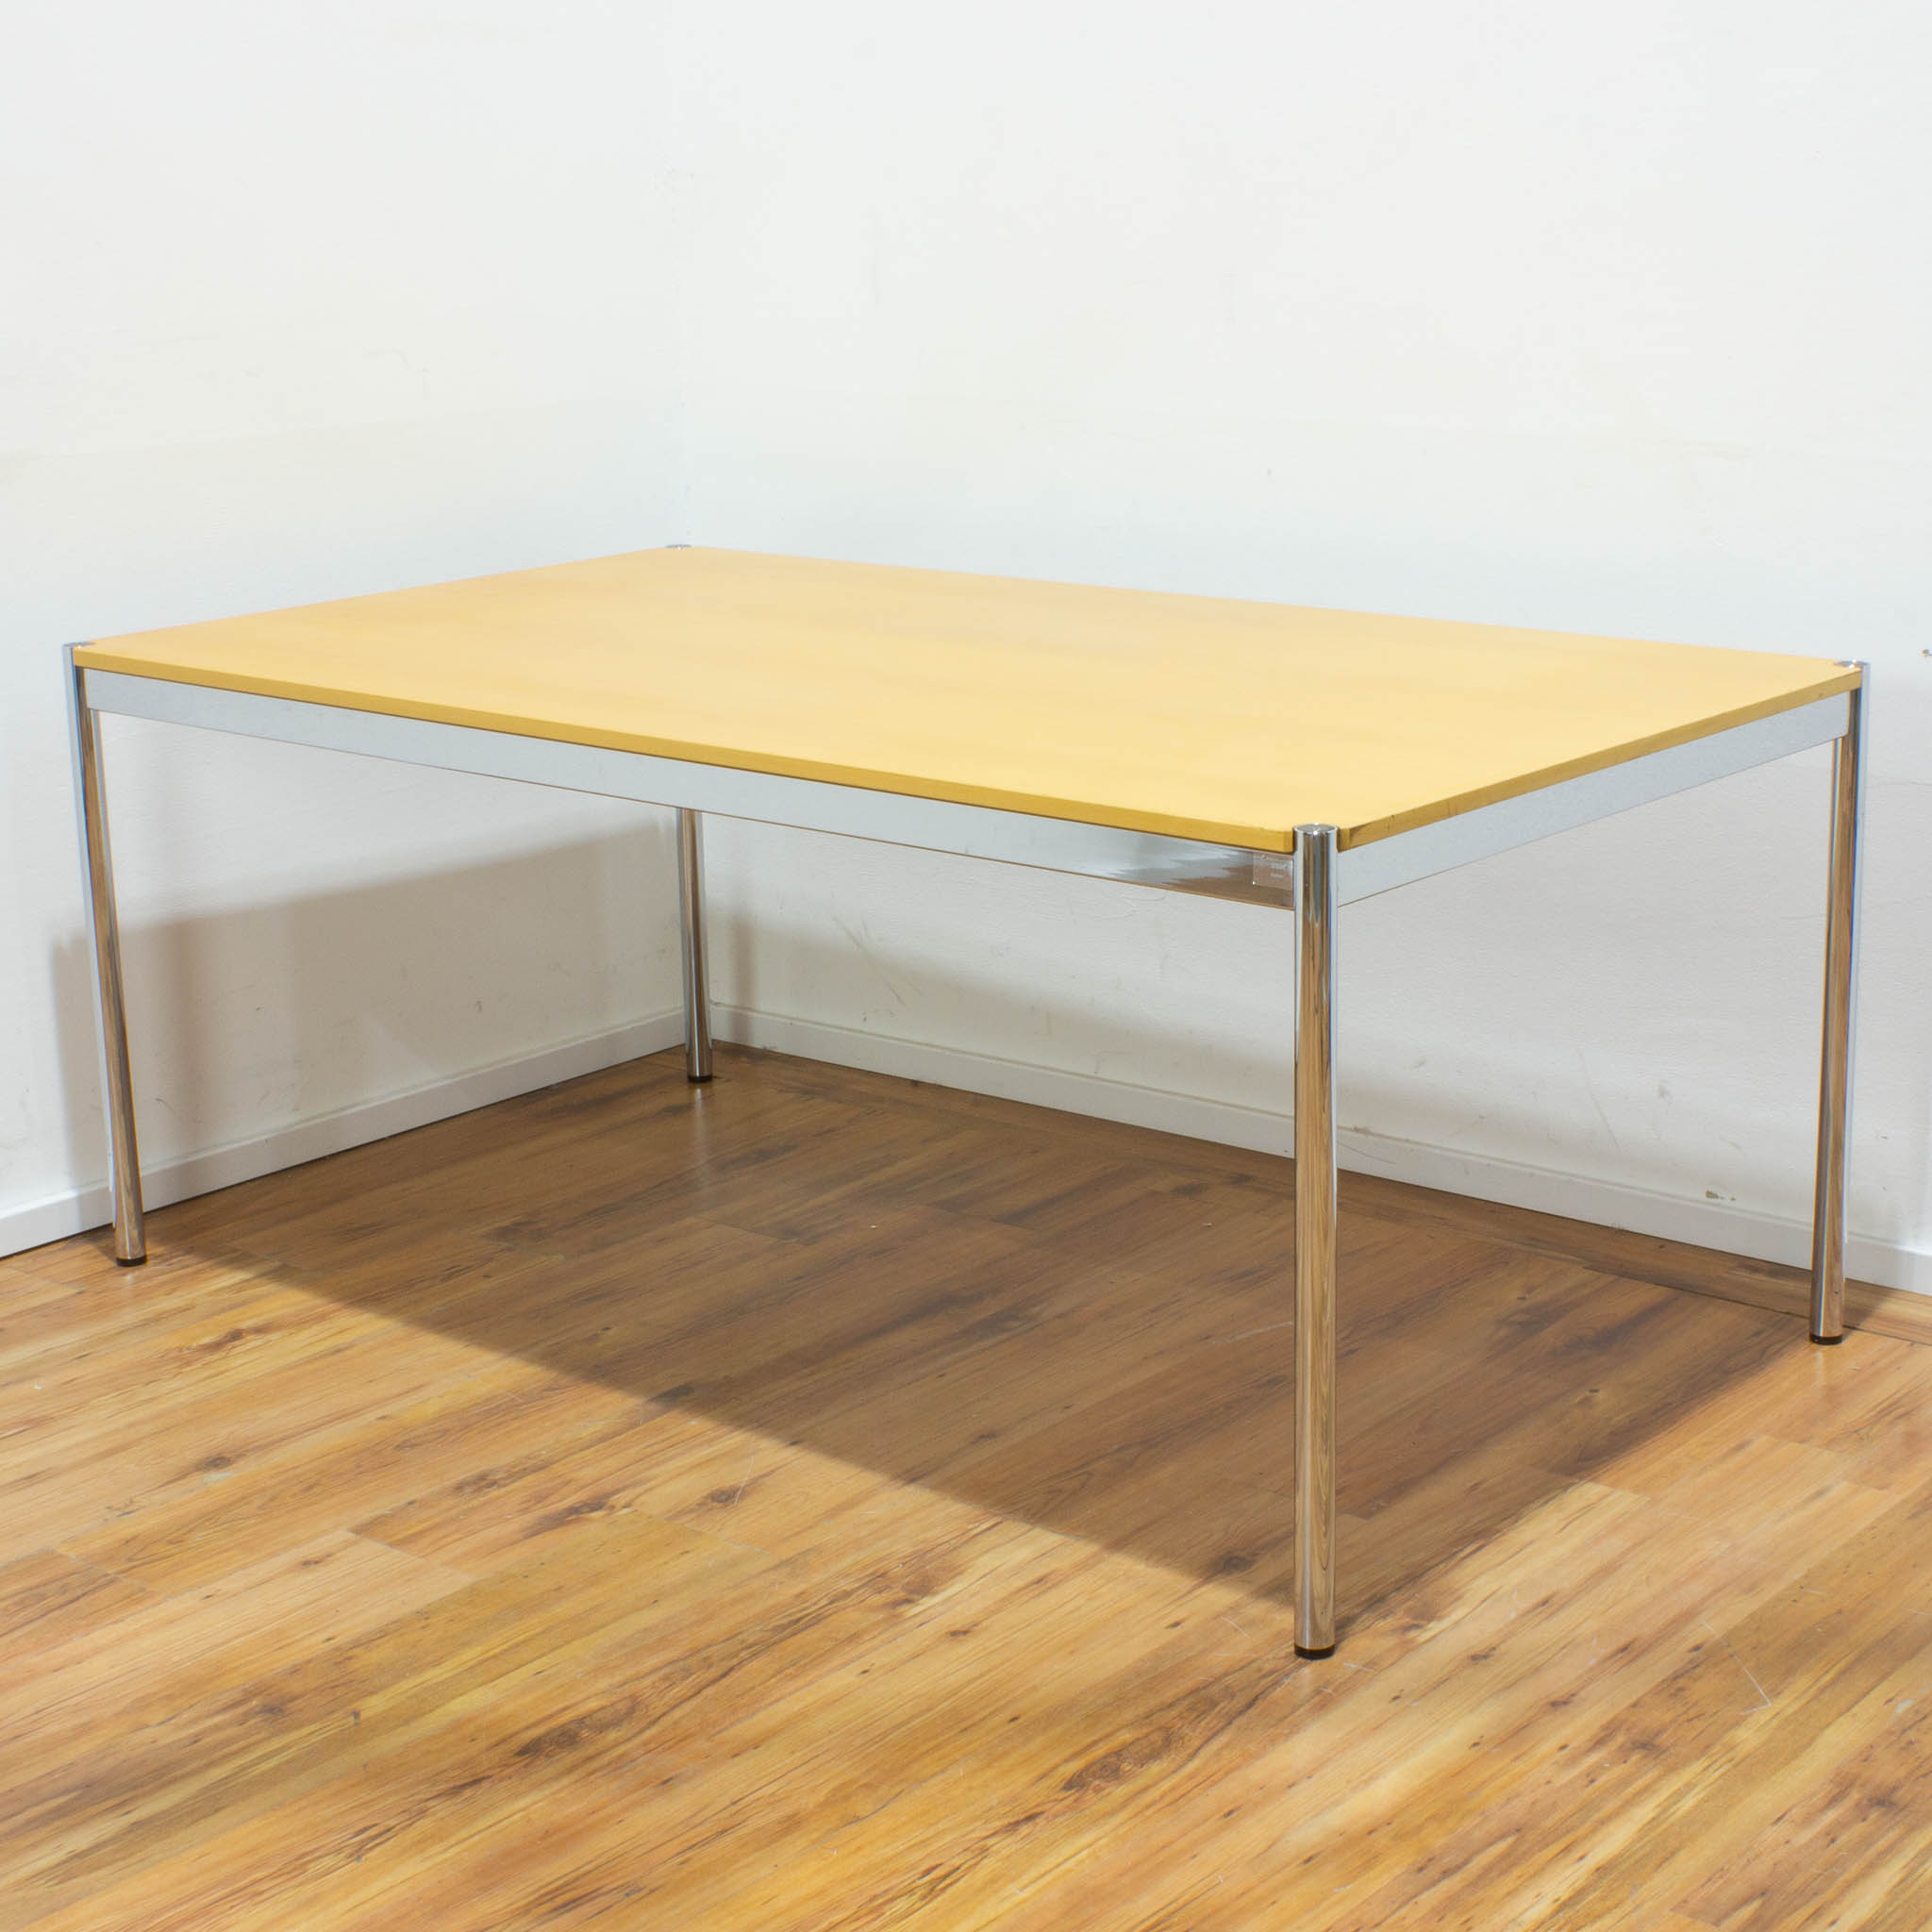  USM Haller Schreibtisch - Tischplatte buche - gebraucht - 175 x 100 cm